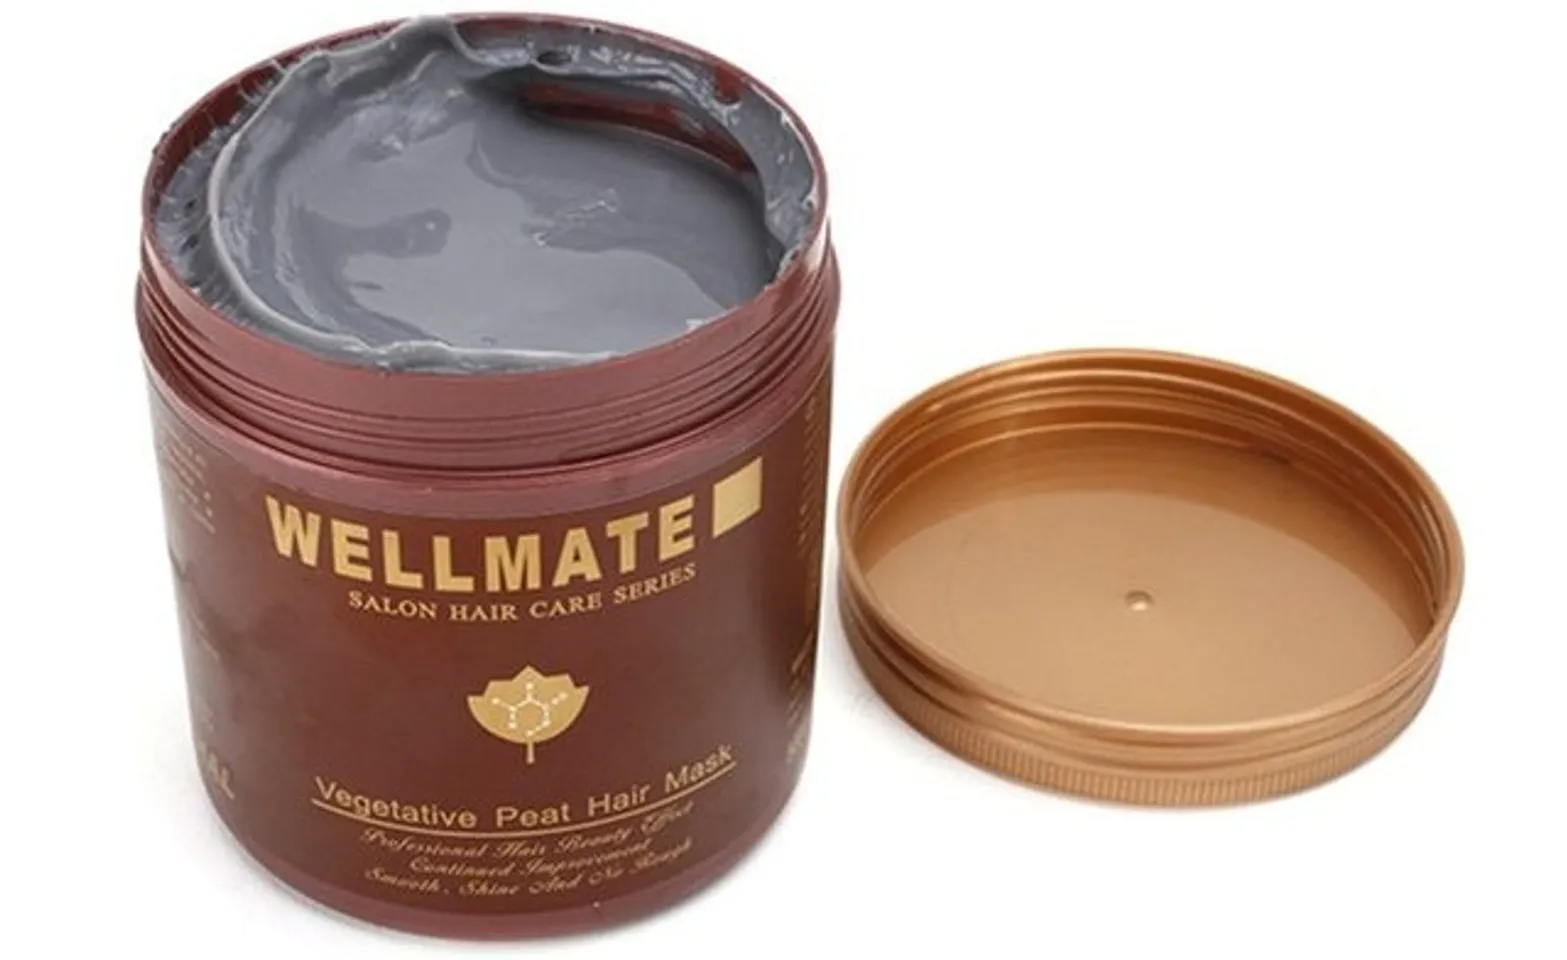 Kem ủ tóc cao cấp Wellmate với thành phần protein, keratin và tinh dầu argan chính là giải pháp chăm sóc mái tóc chắc khỏe